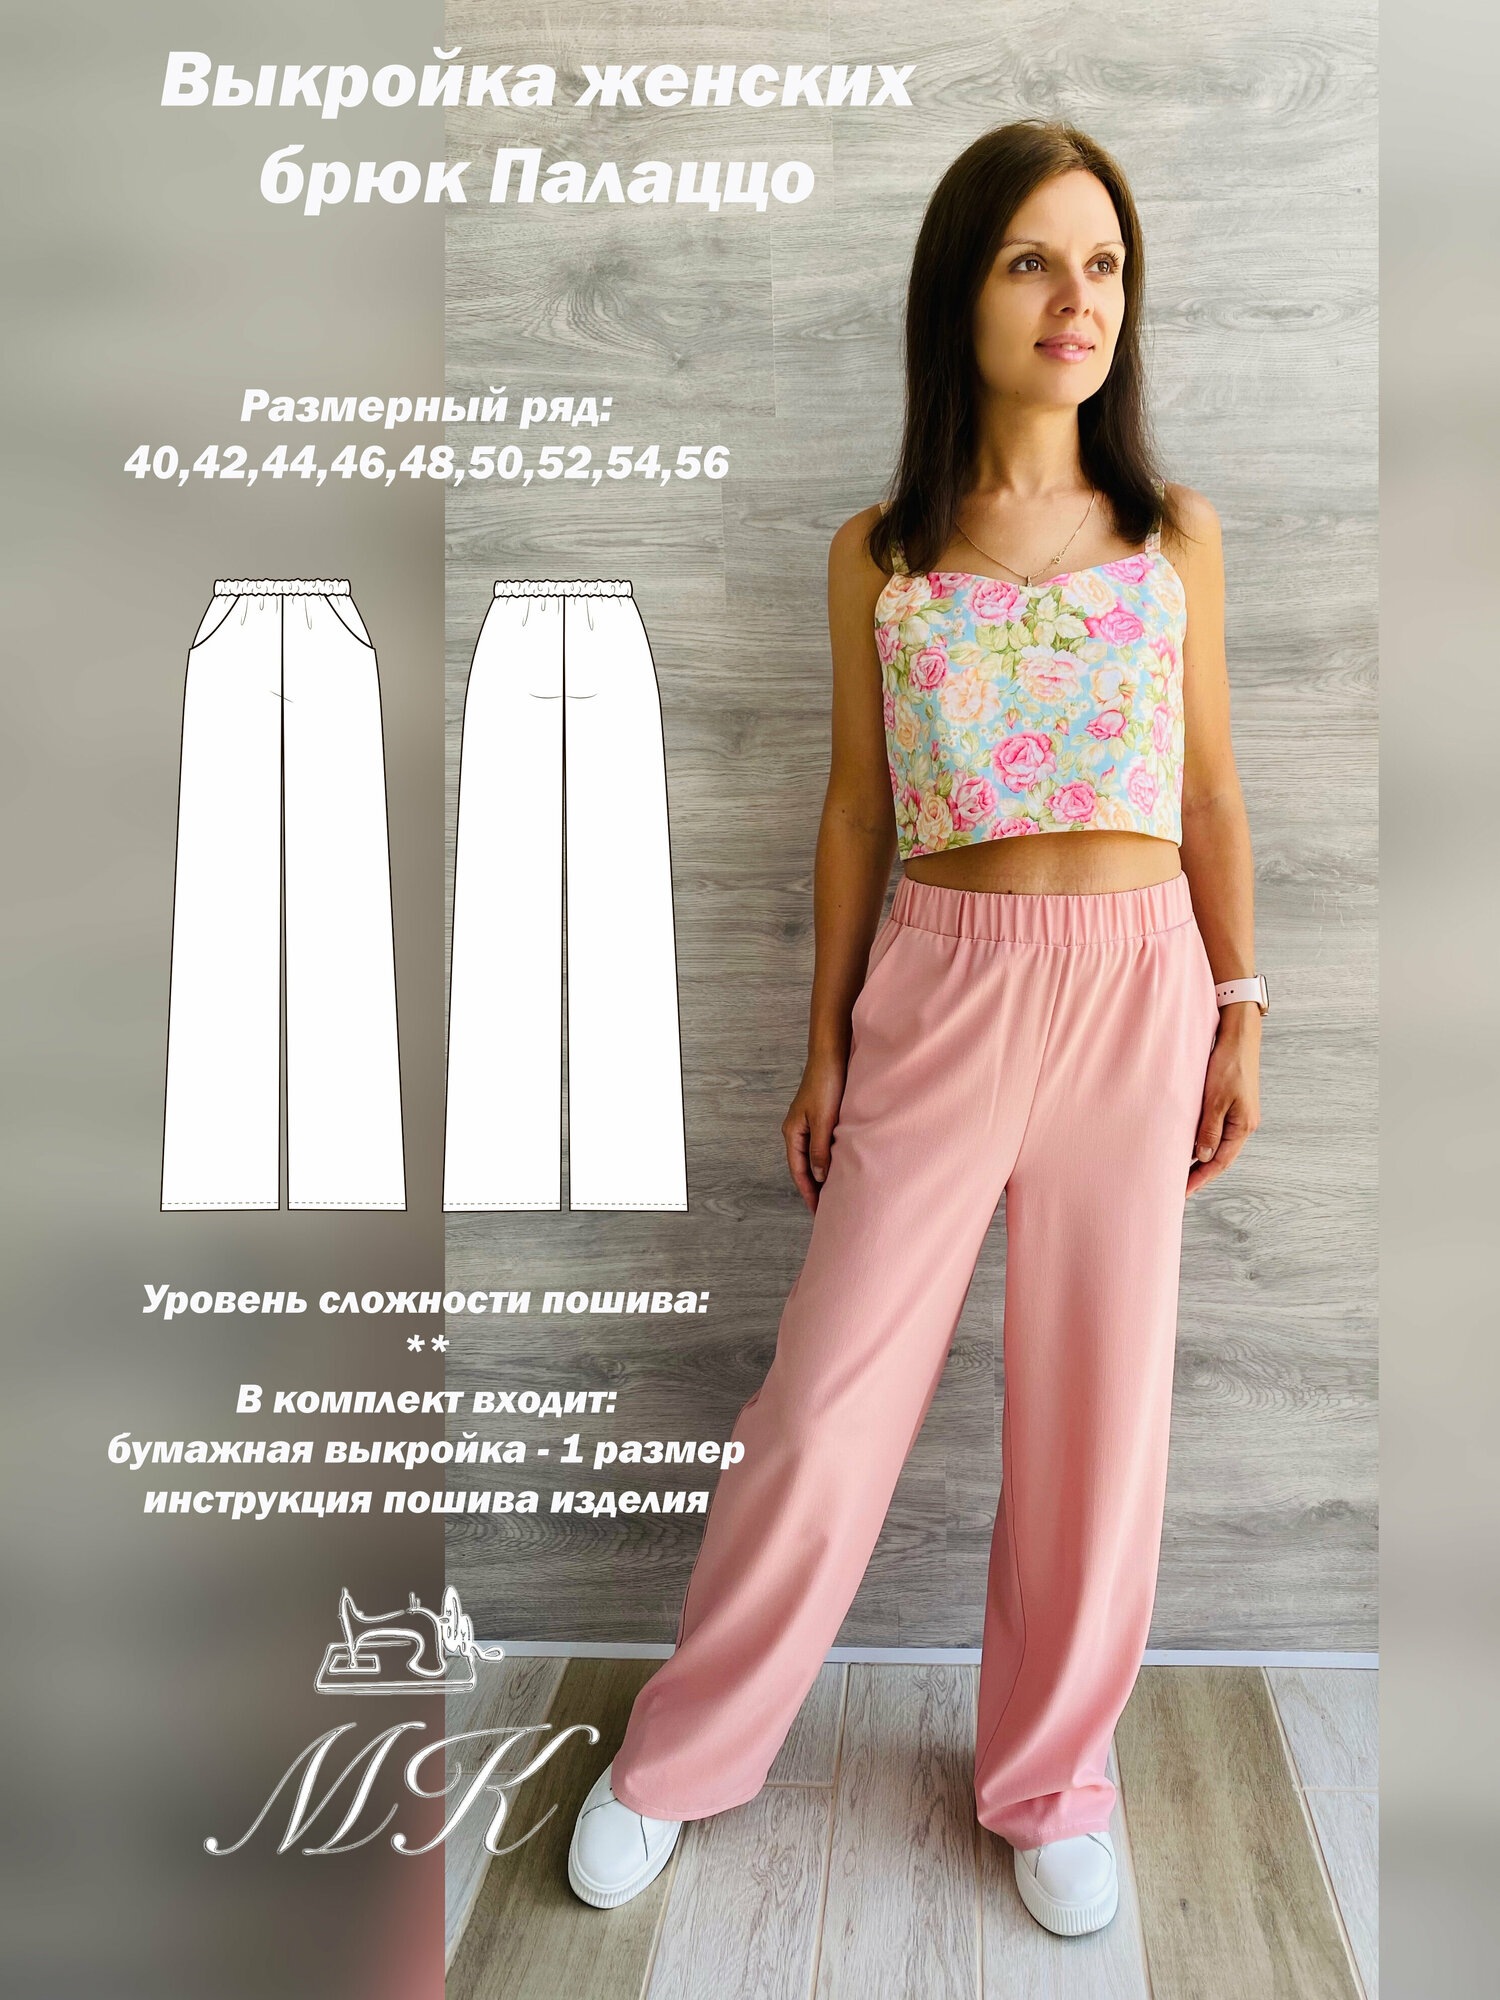 Выкройка для шитья MK-studiya женские брюки свободного кроя размер 46